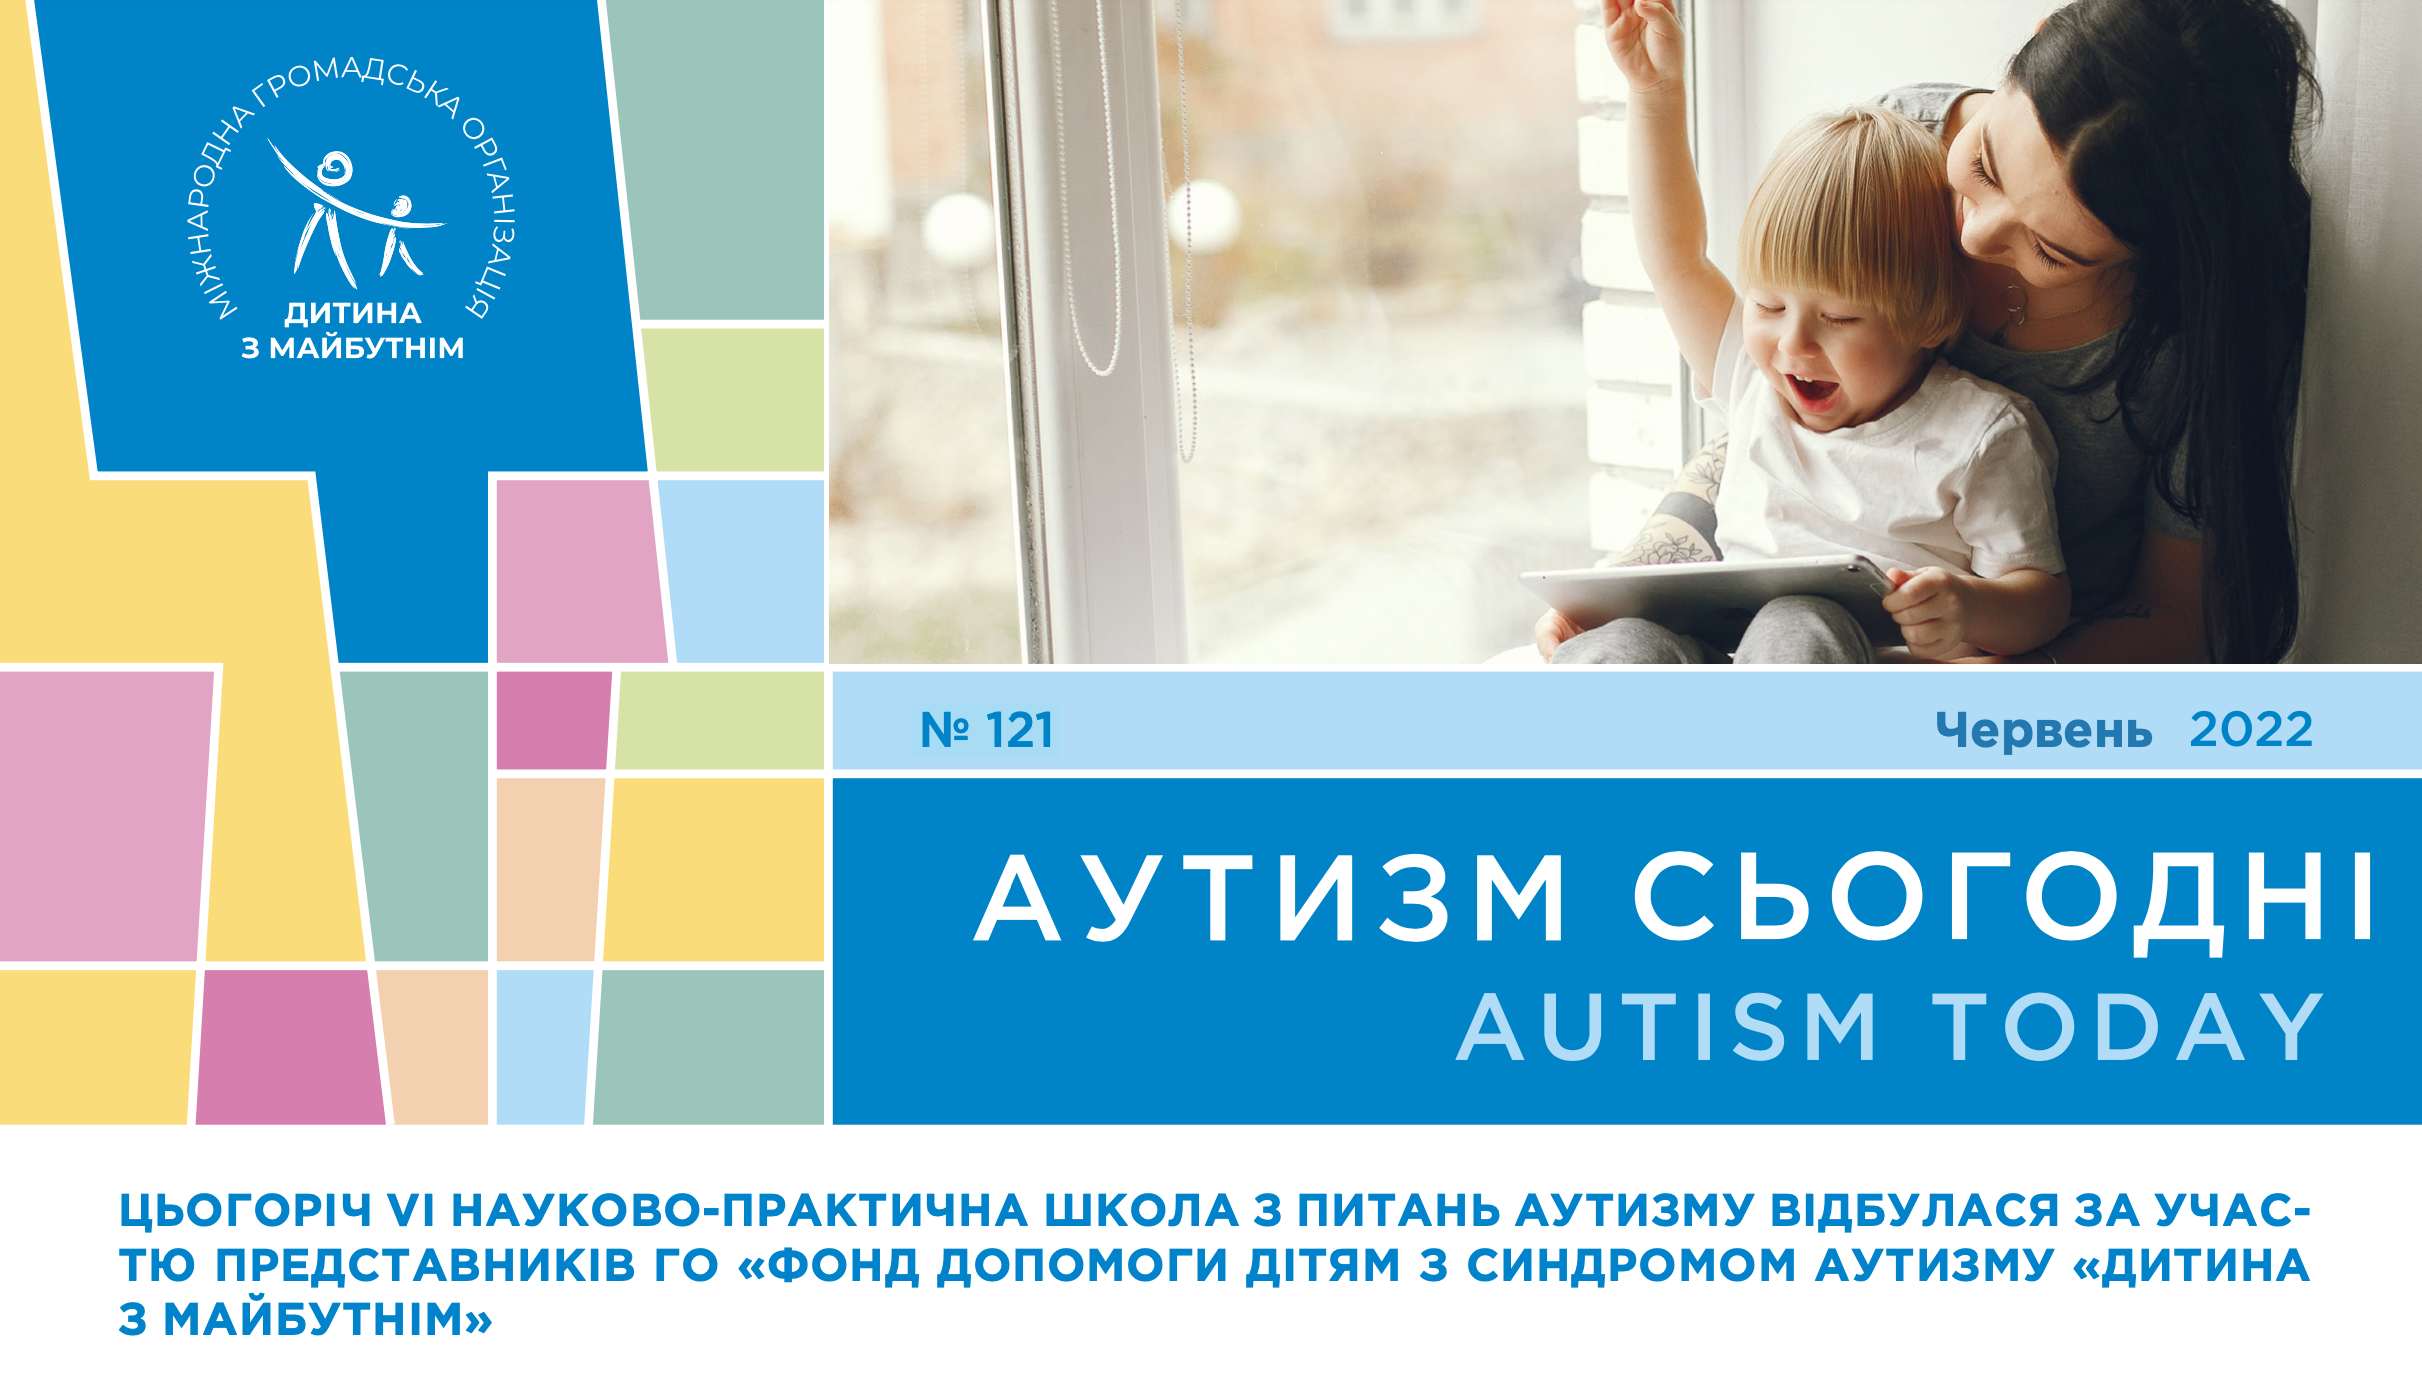 VI науково-практична школа з аутизму, десять кроків до побудови незалежності дитини з РАС та історія аутиста з ідеальним слухом – на сторінках “Аутизм сьогодні” за червень 2022 року